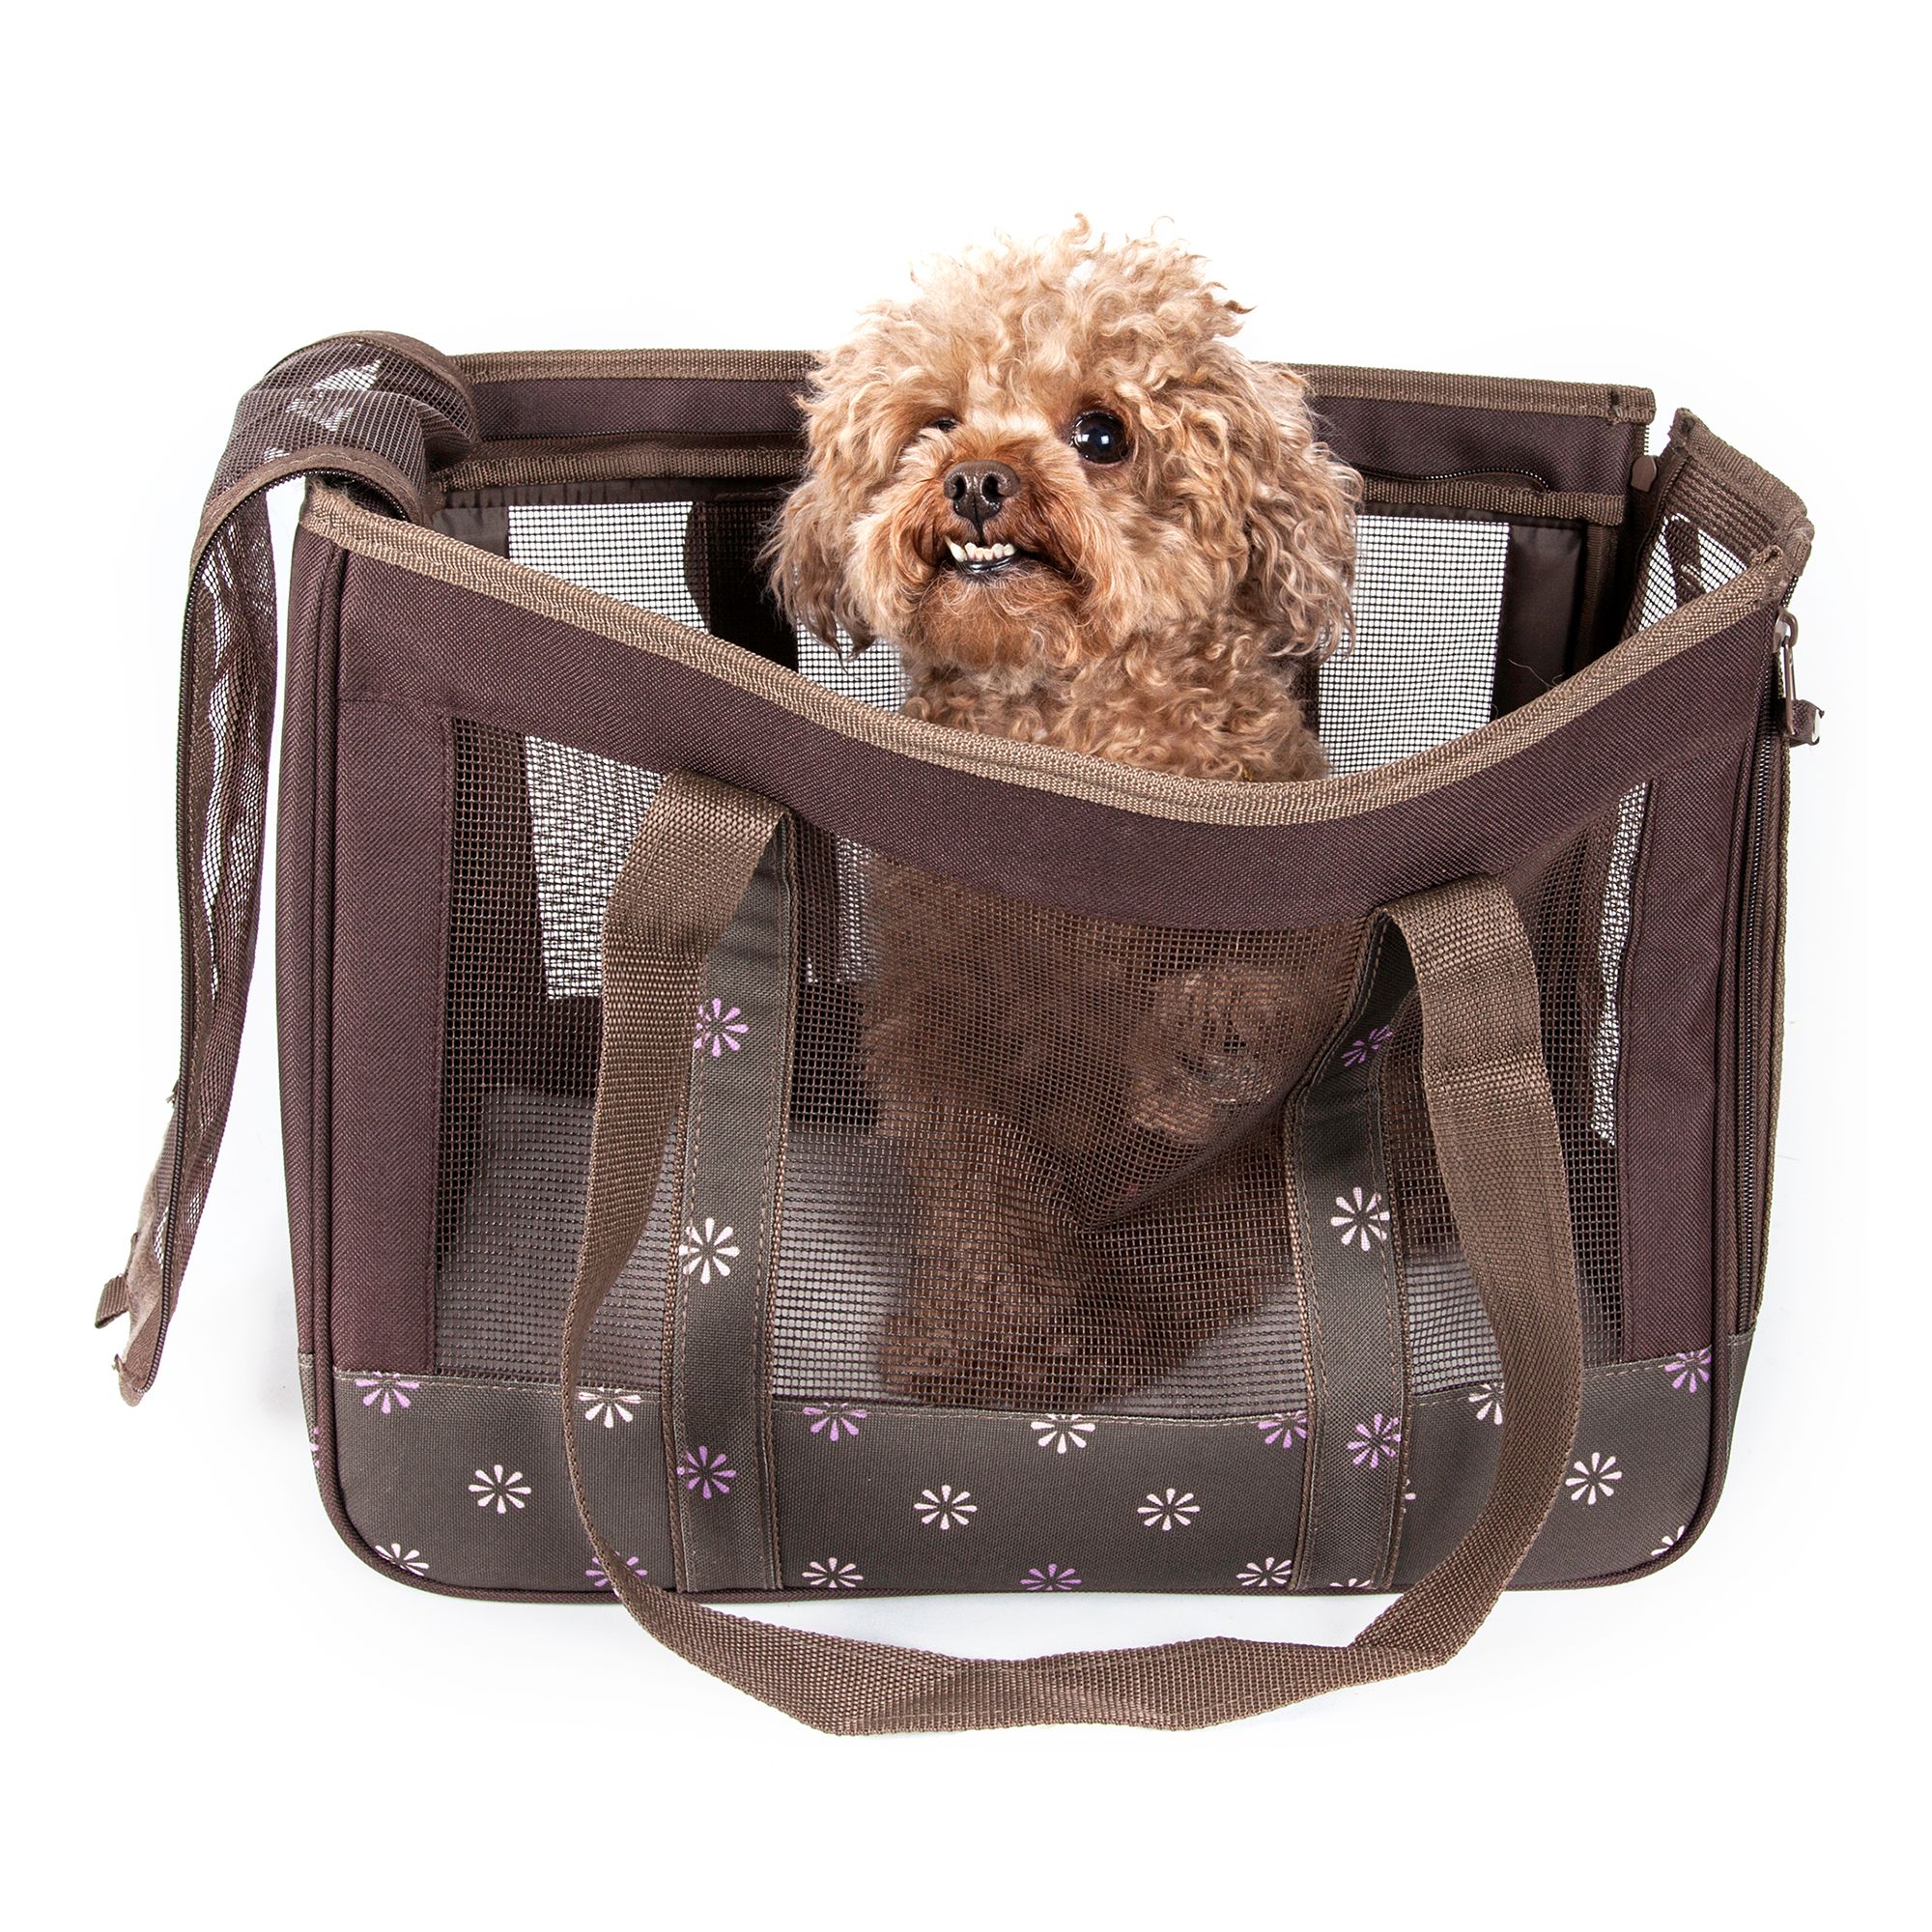 Переноска pet. Luxury Pet Carrier переноска для собак. Переноска гуччи для собак. Pet Life сумка для собак. Pet Fashion сумка для собак.